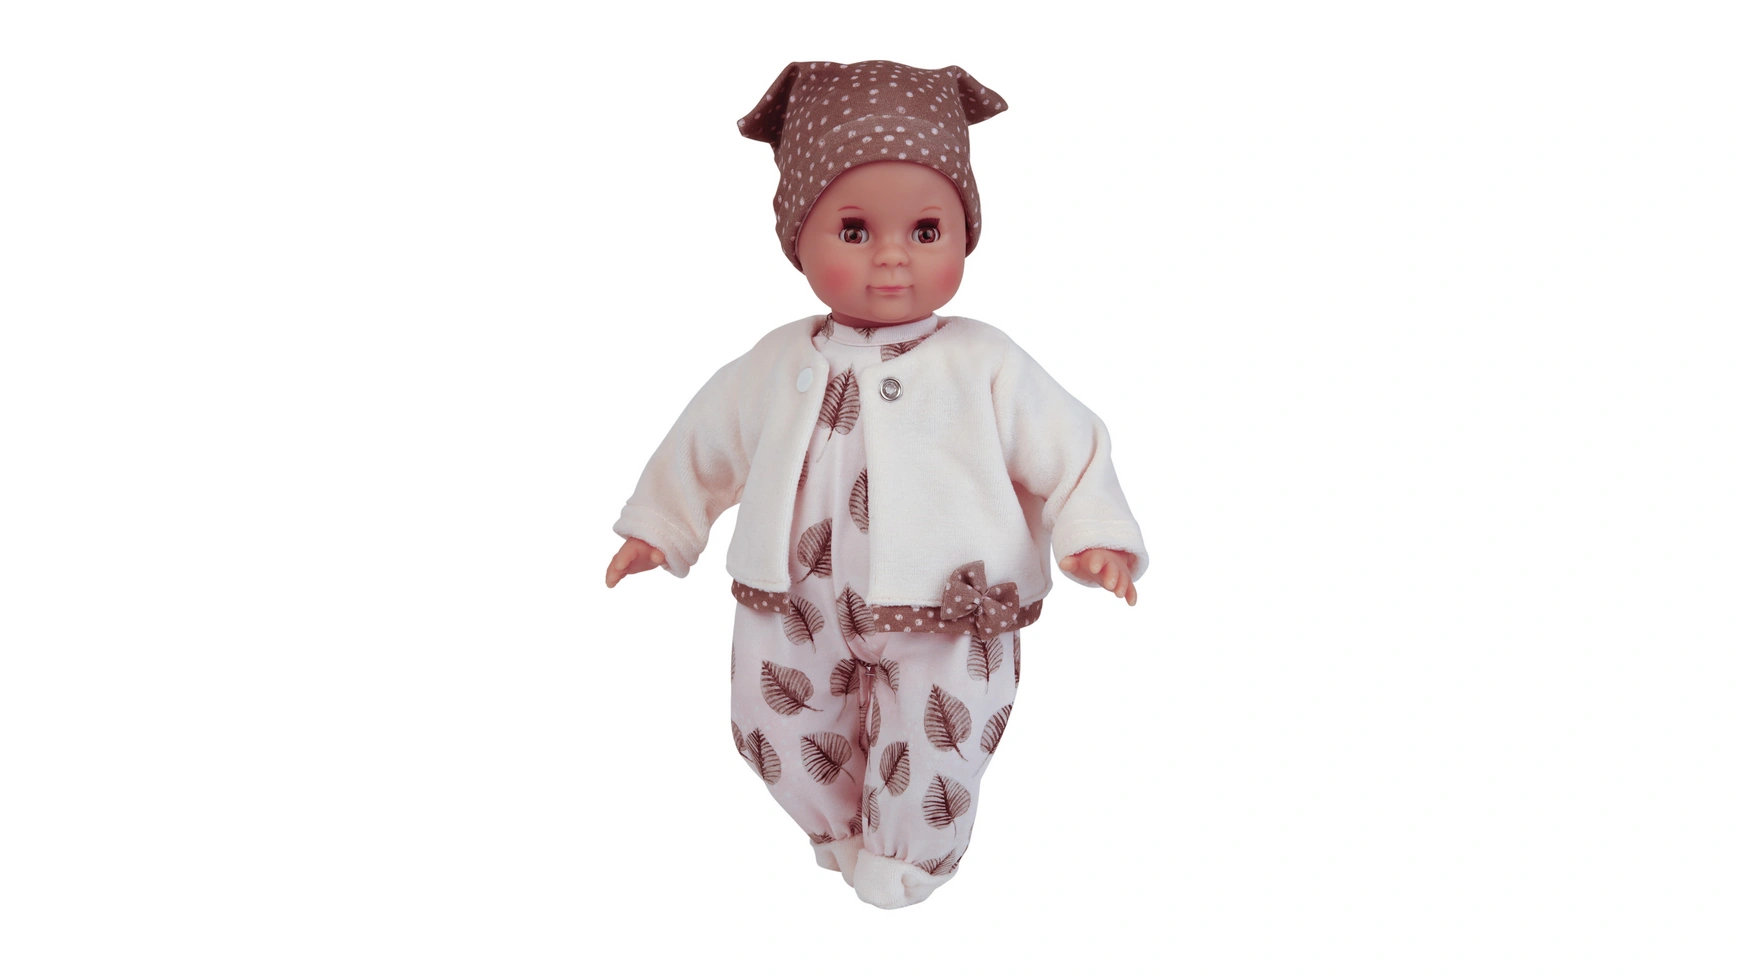 

Schildkroet-Puppen Кукла Schlummerle 32 см с окрашенными волосами и карими спящими глазами, одежда розовая/белая/коричневая